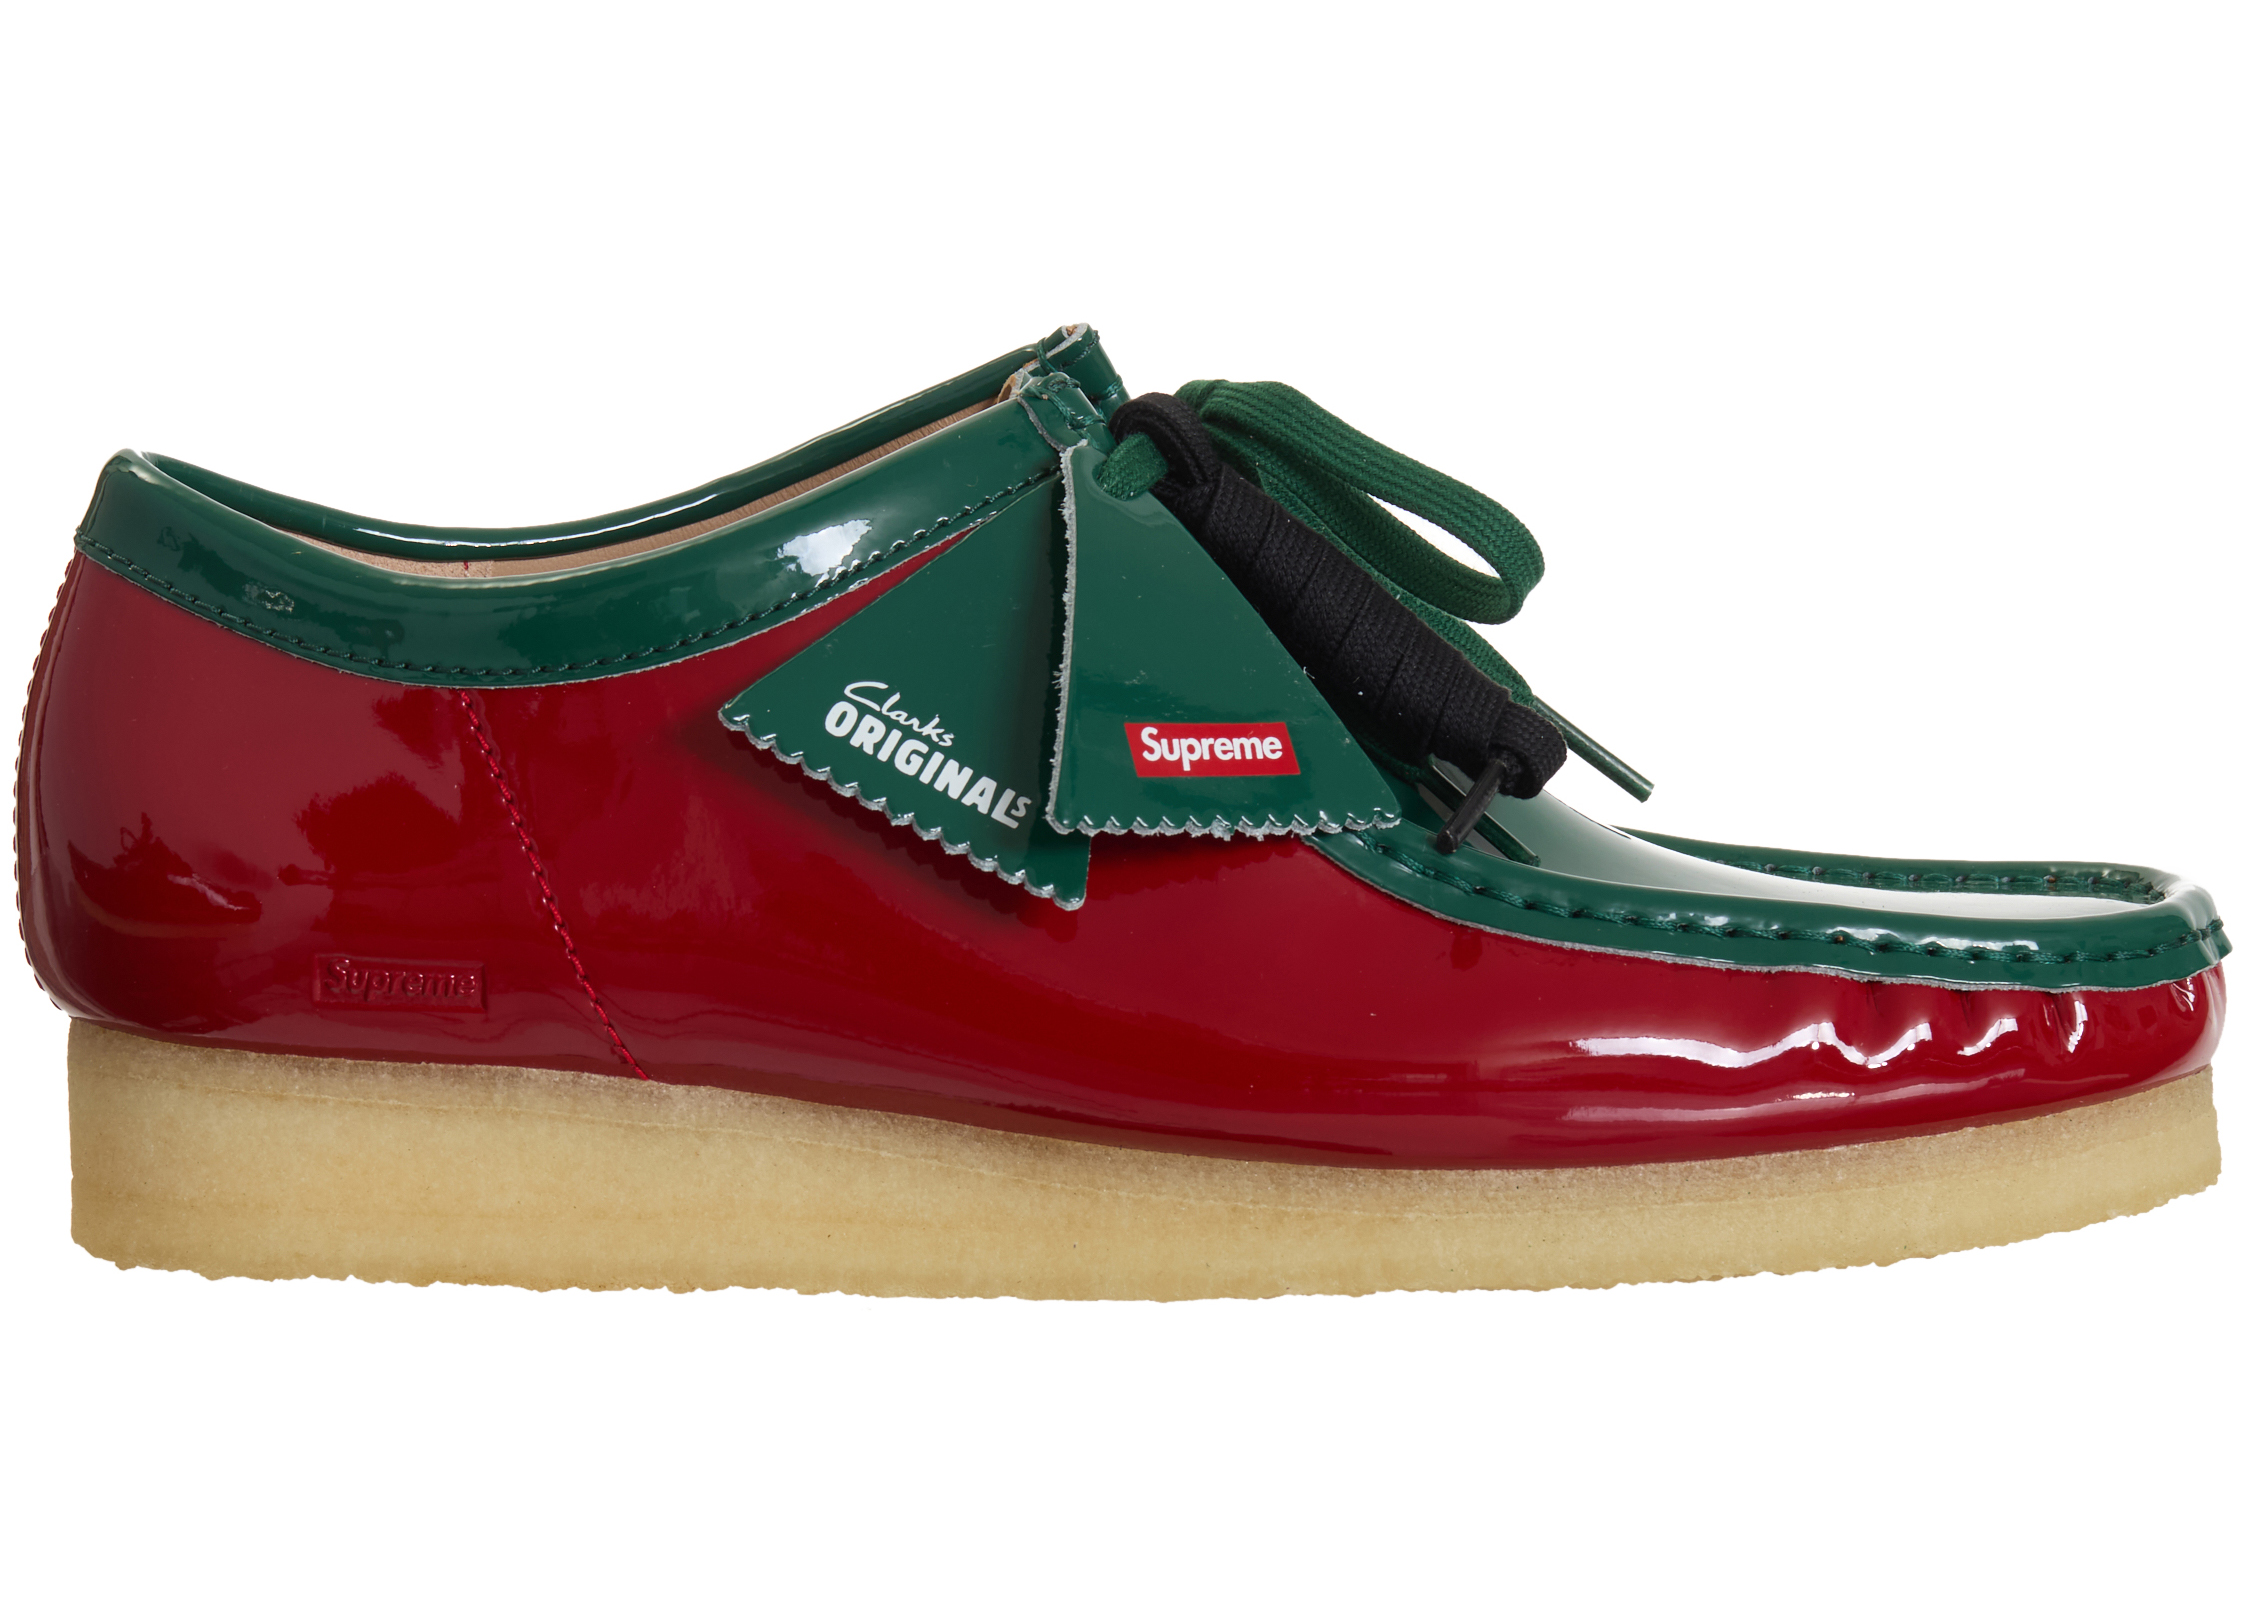 Clarks Originals Wallabee Patent Leather Boot Supreme Multicolor